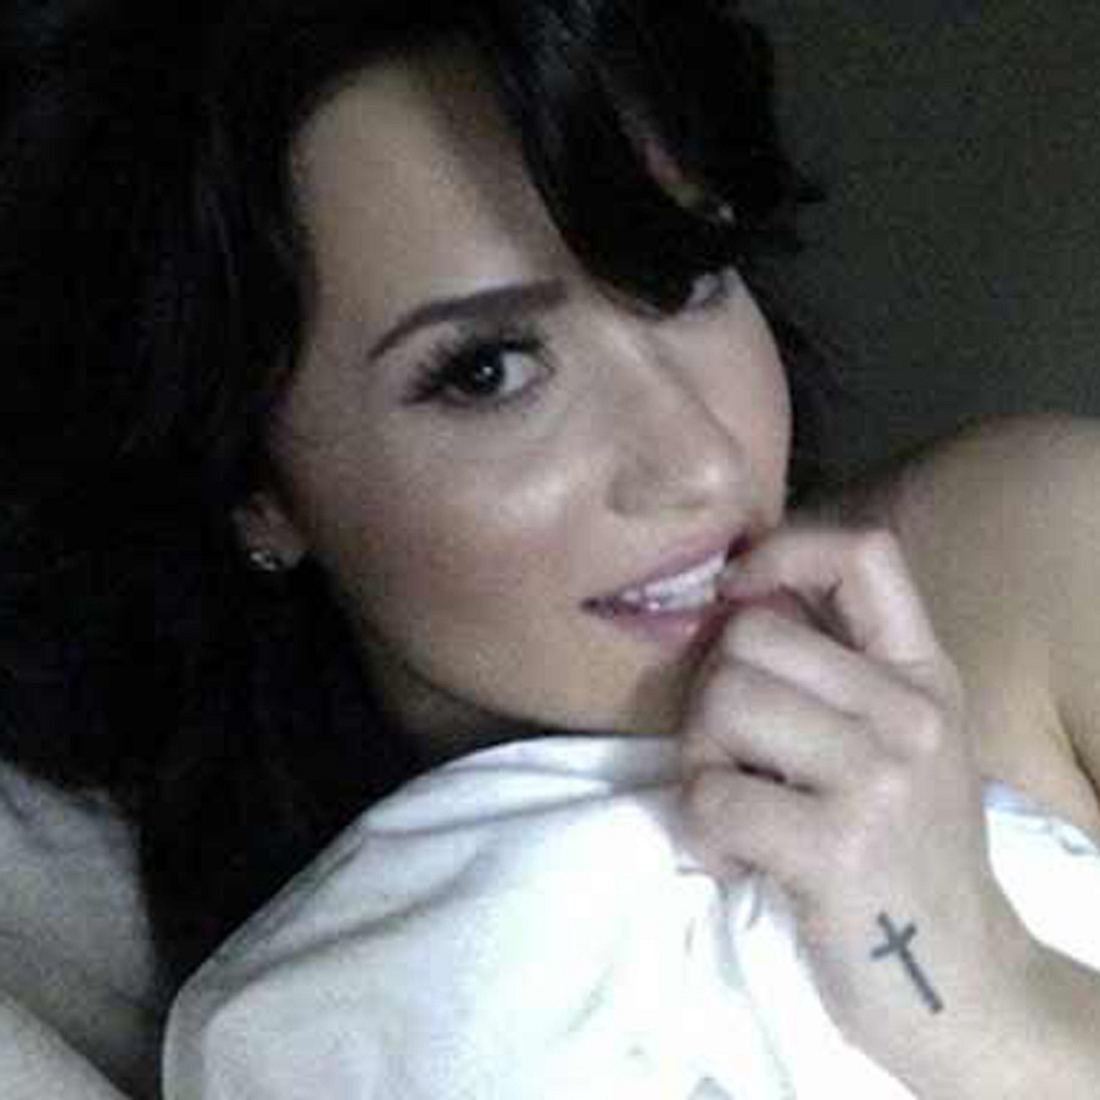 Demi Lovato Nackt Neue Krasse Bilder Geleakt BRAVO